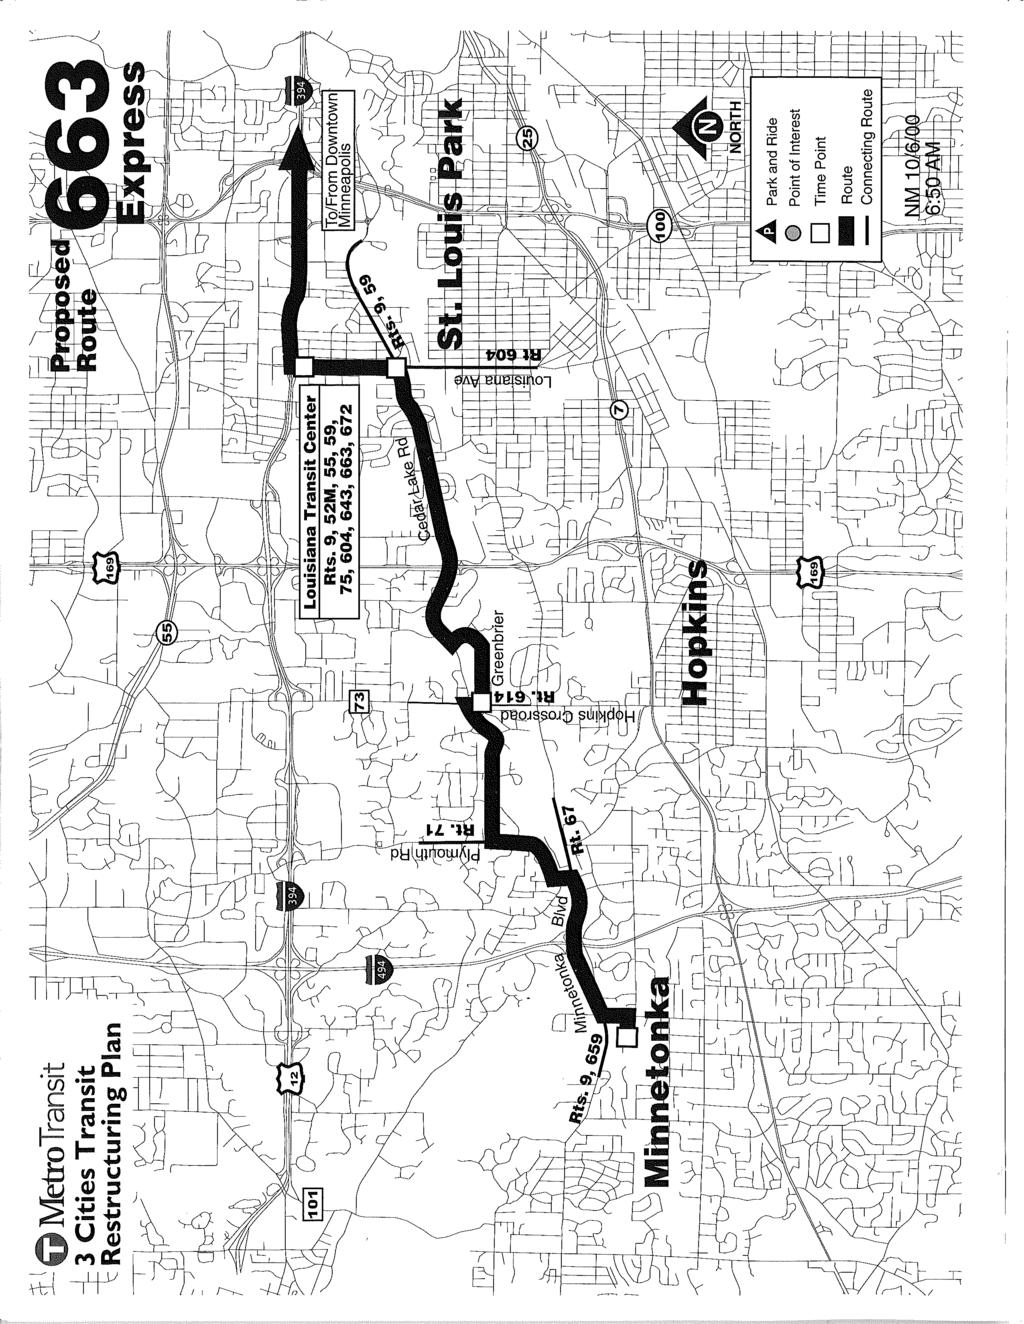 1J G MetroTransit --i- 3 Cities Transit 1= Restructuring Plan ----r-